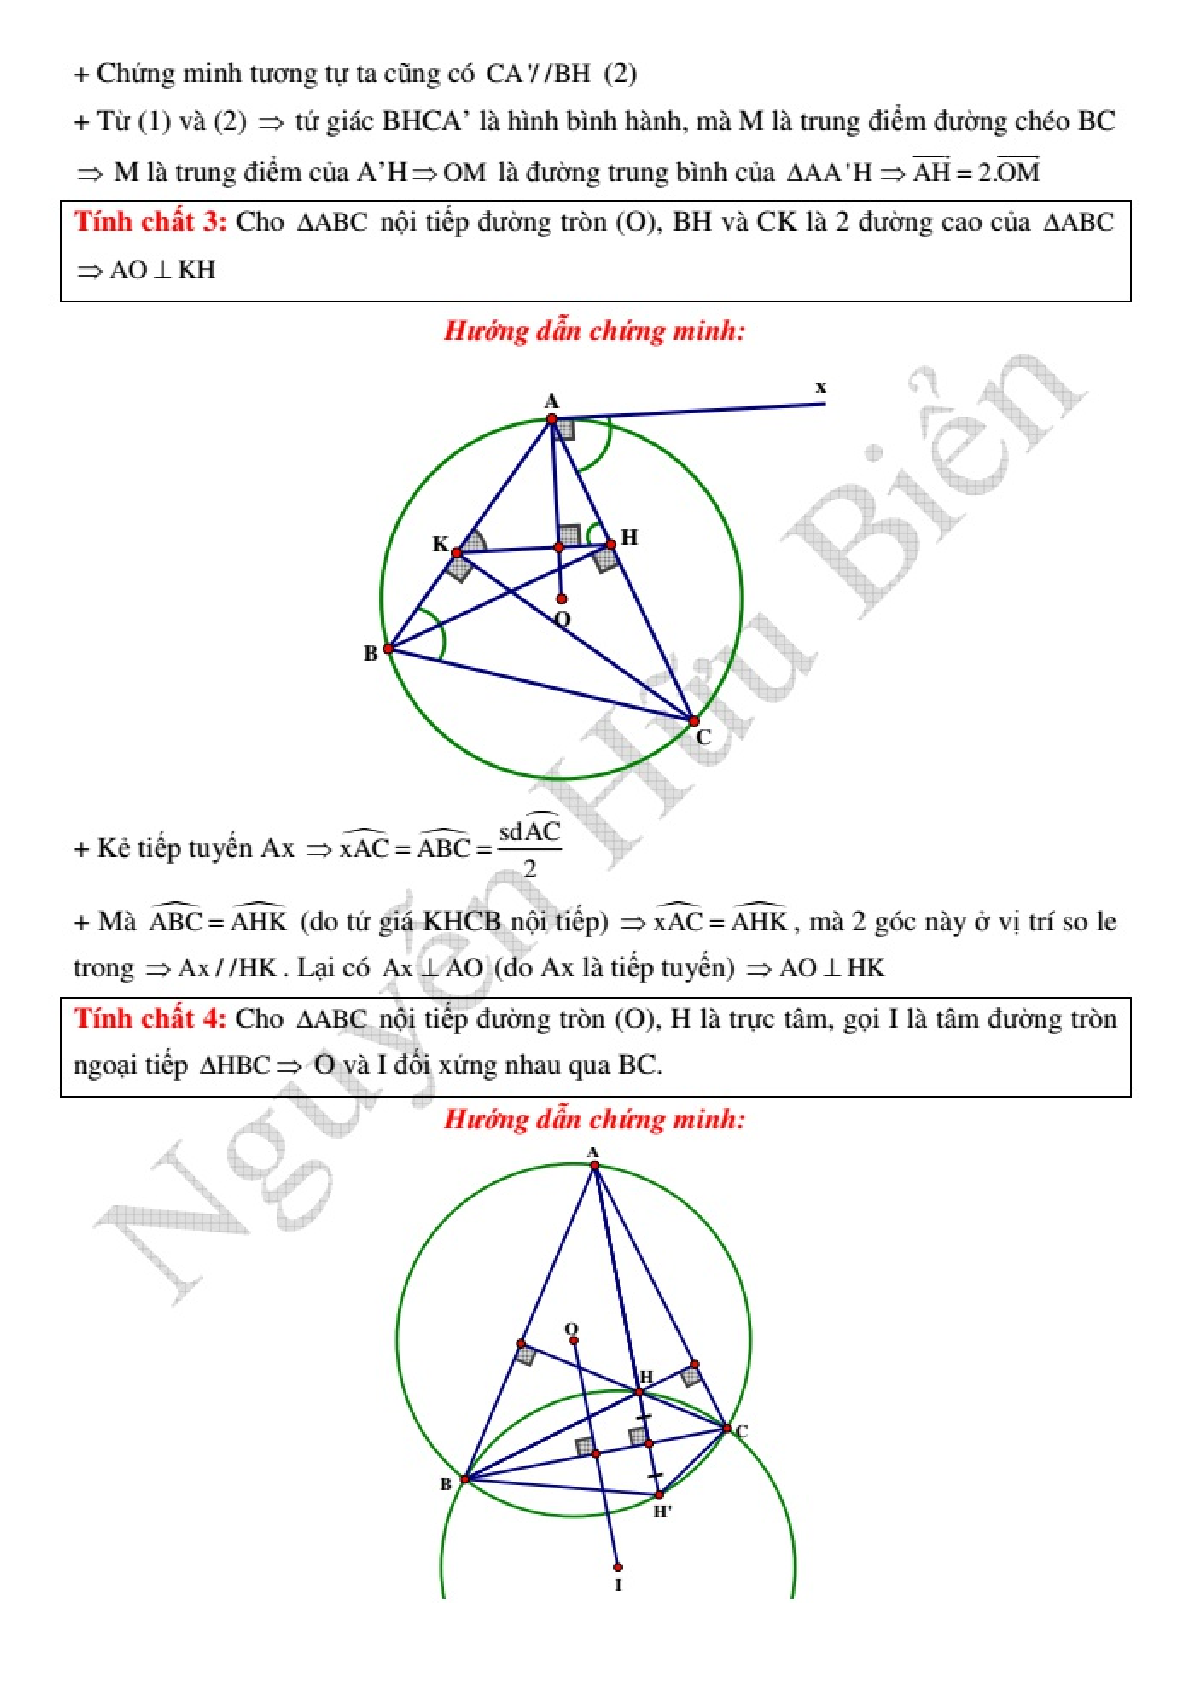 Kỹ thuật công phá hình học phẳng Oxy để giải nhanh (trang 4)